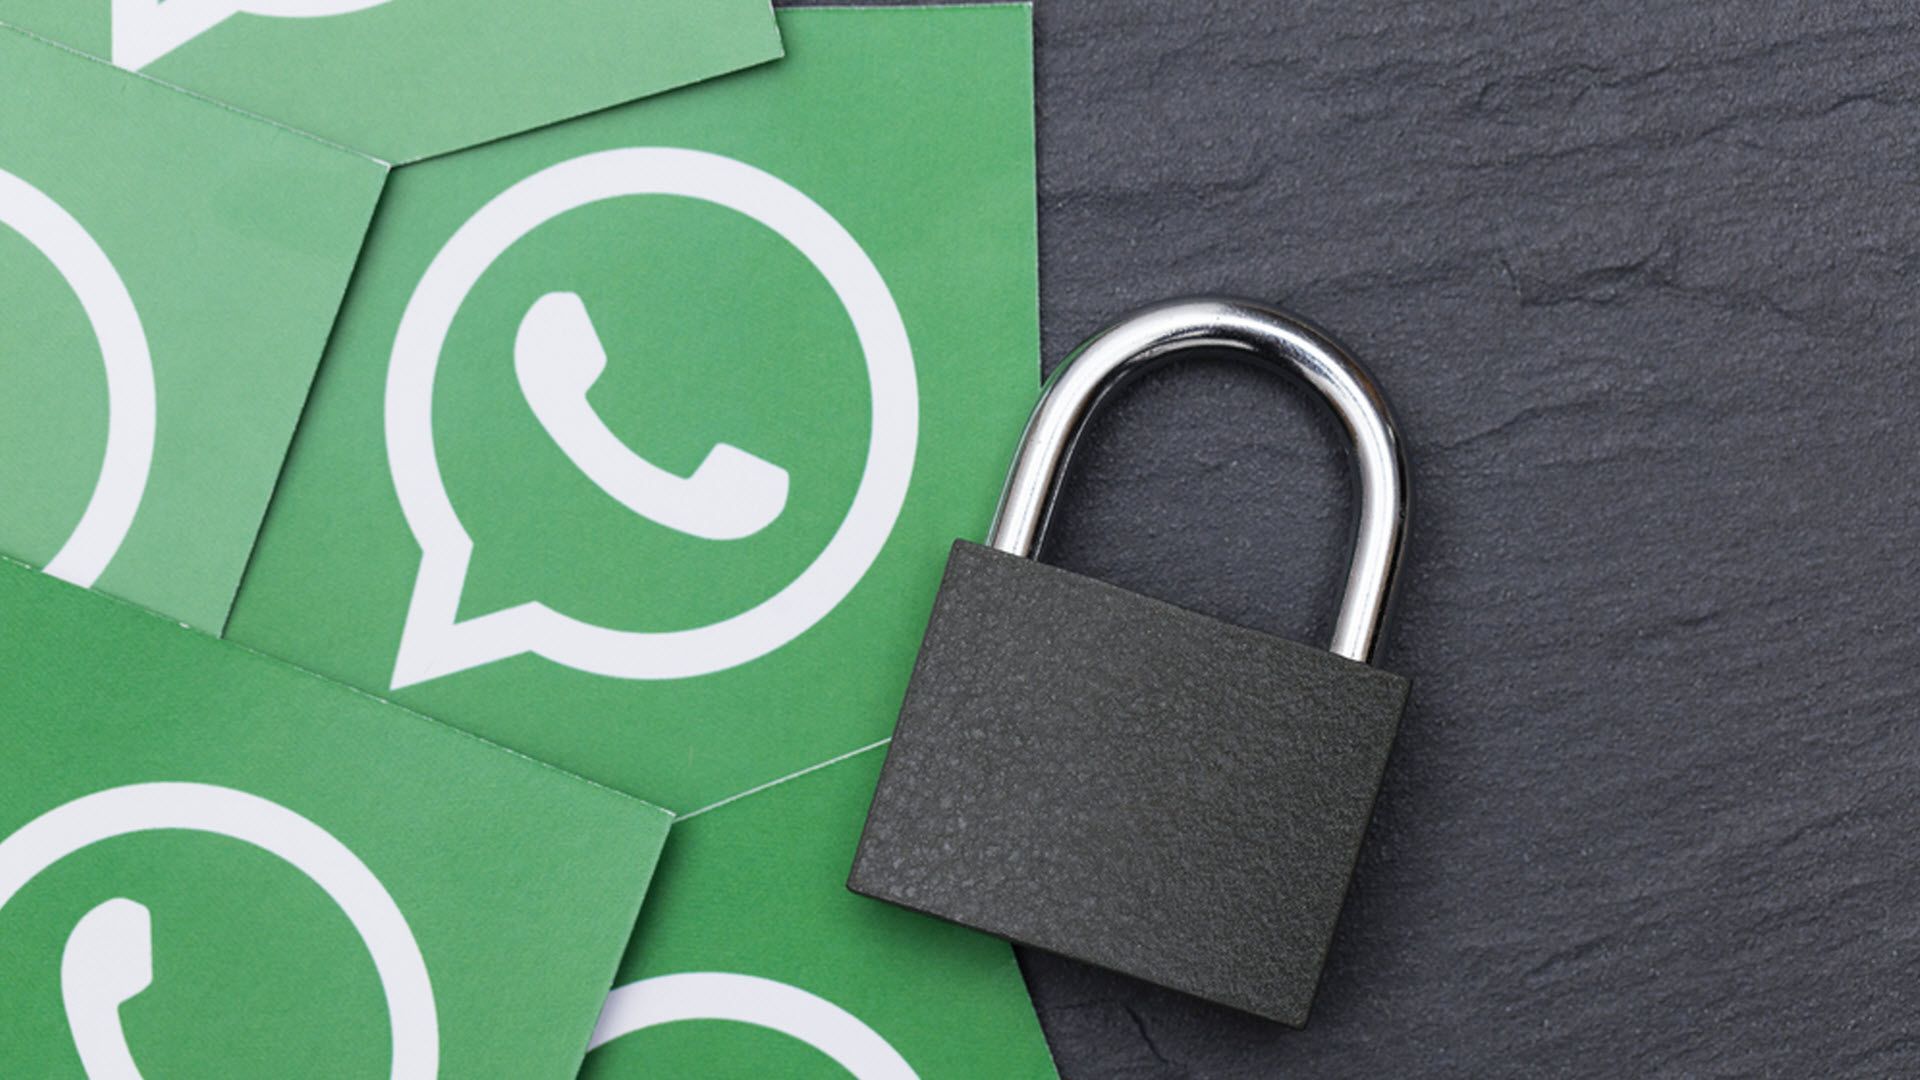 WhatsApp rosa: cuidado con esta falsa actualización que descarga un troyano